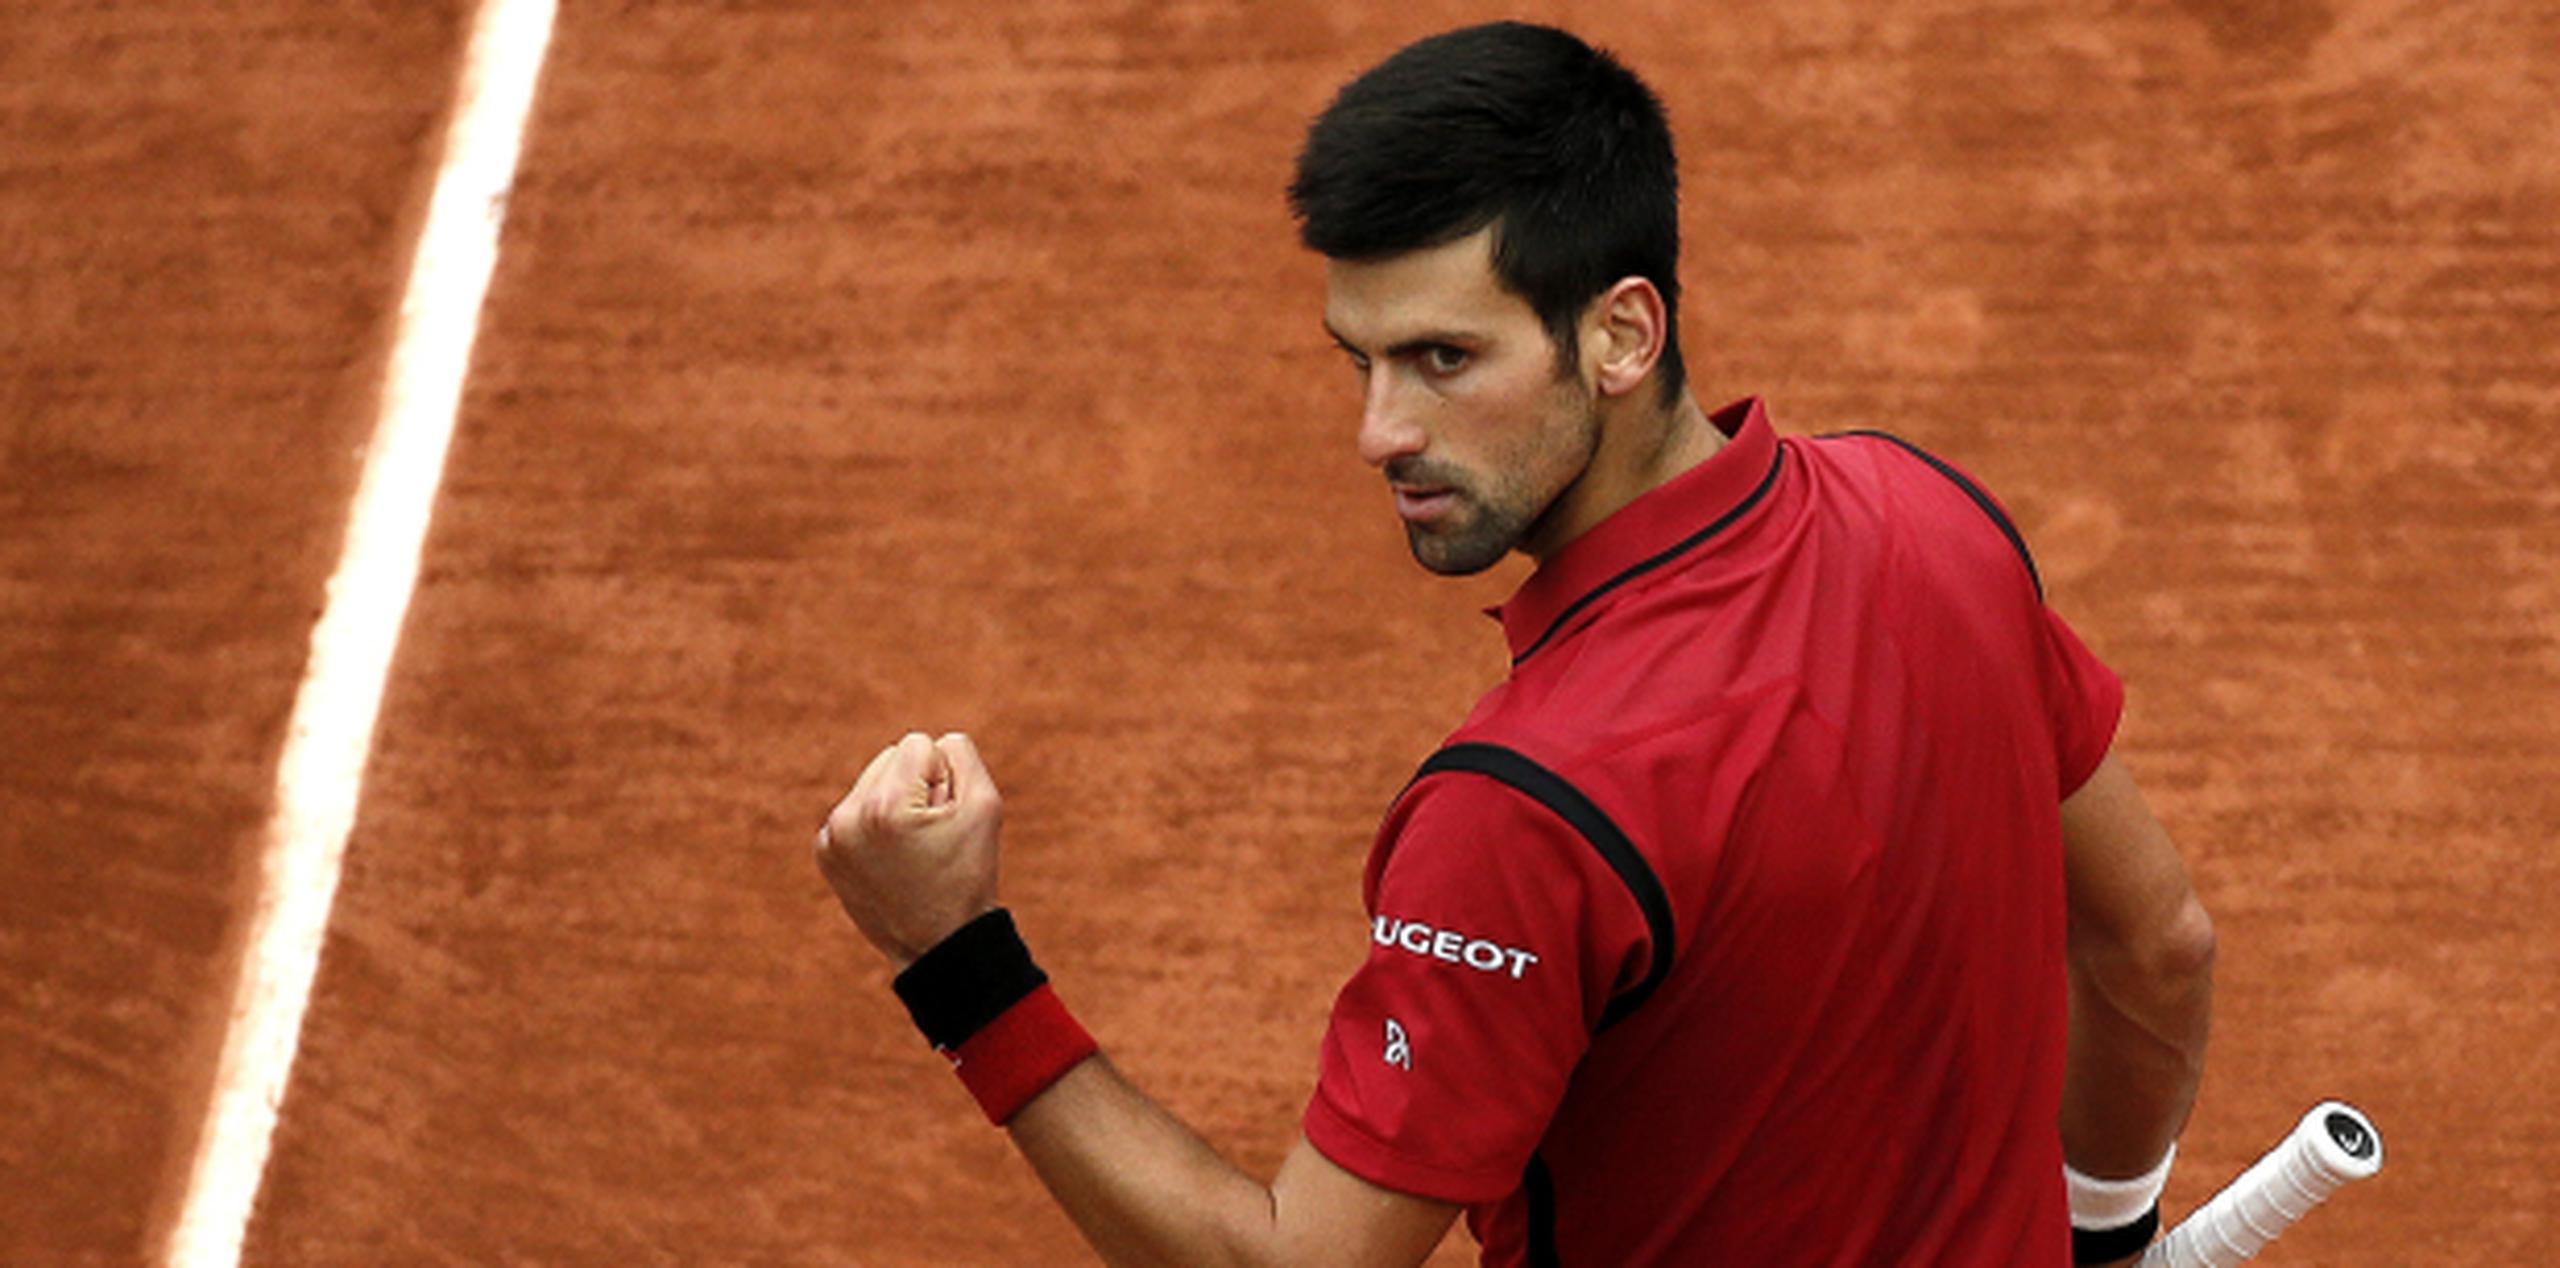 Djokovic busca su primer título en el Roland Garros. (Agencia EFE)